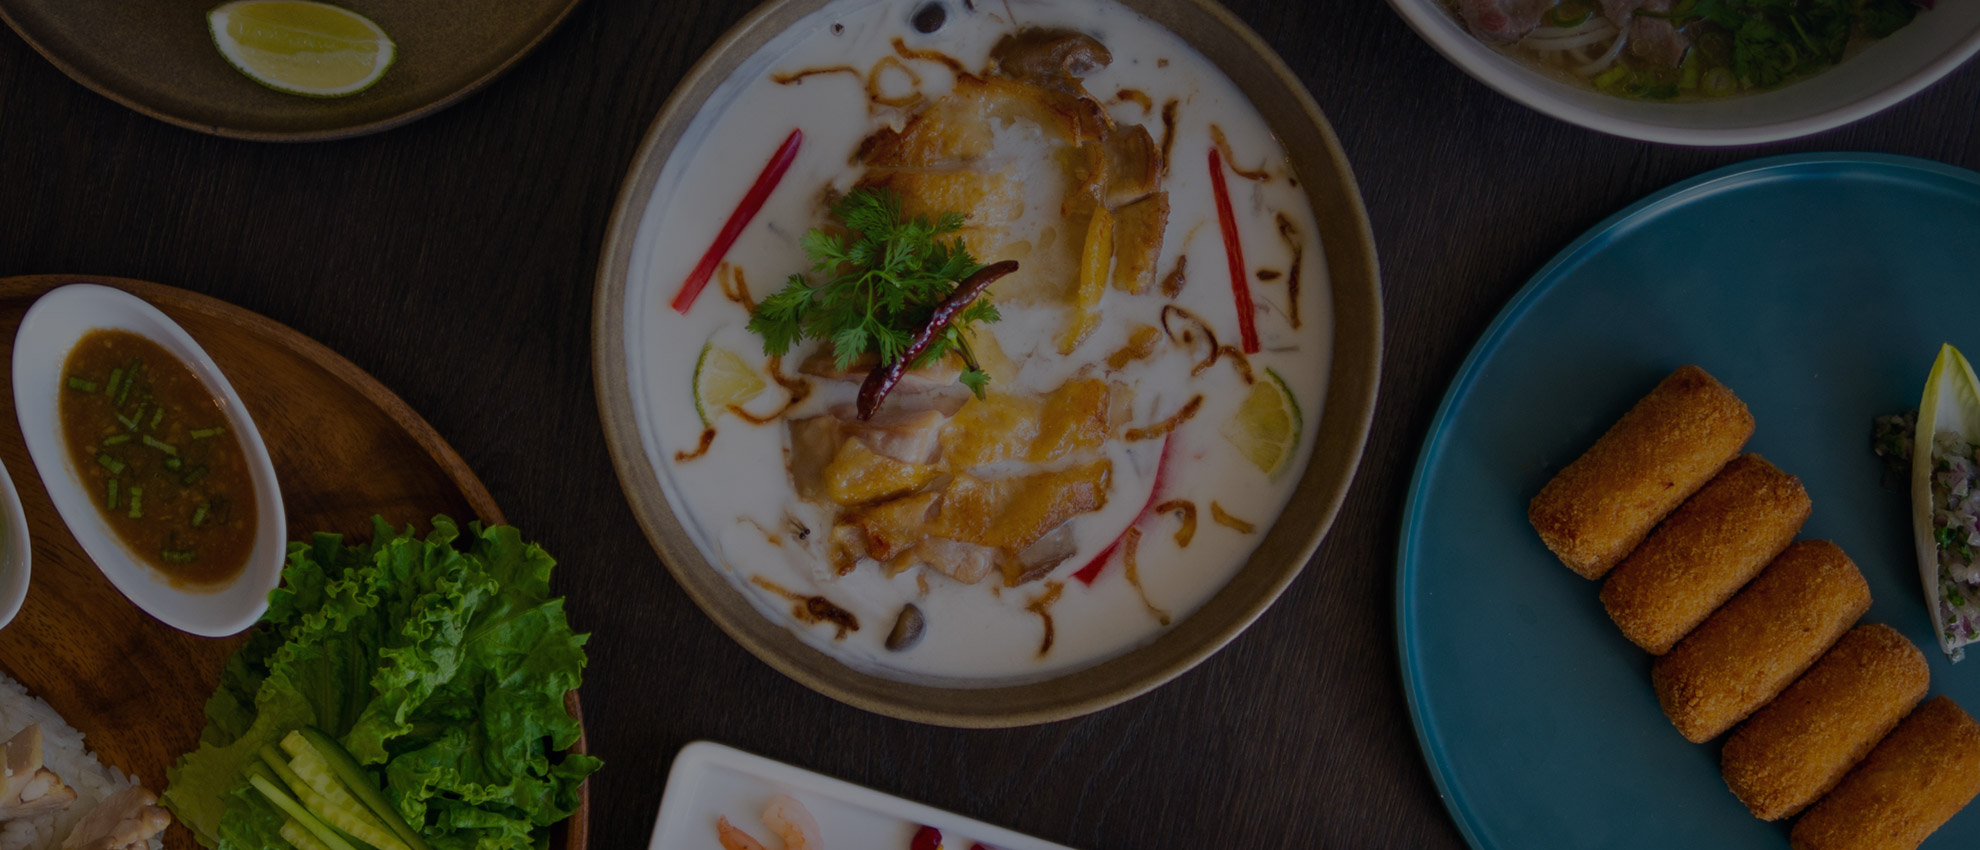 Rin-Tei - Thai & Japanese Cuisine in San Mateo